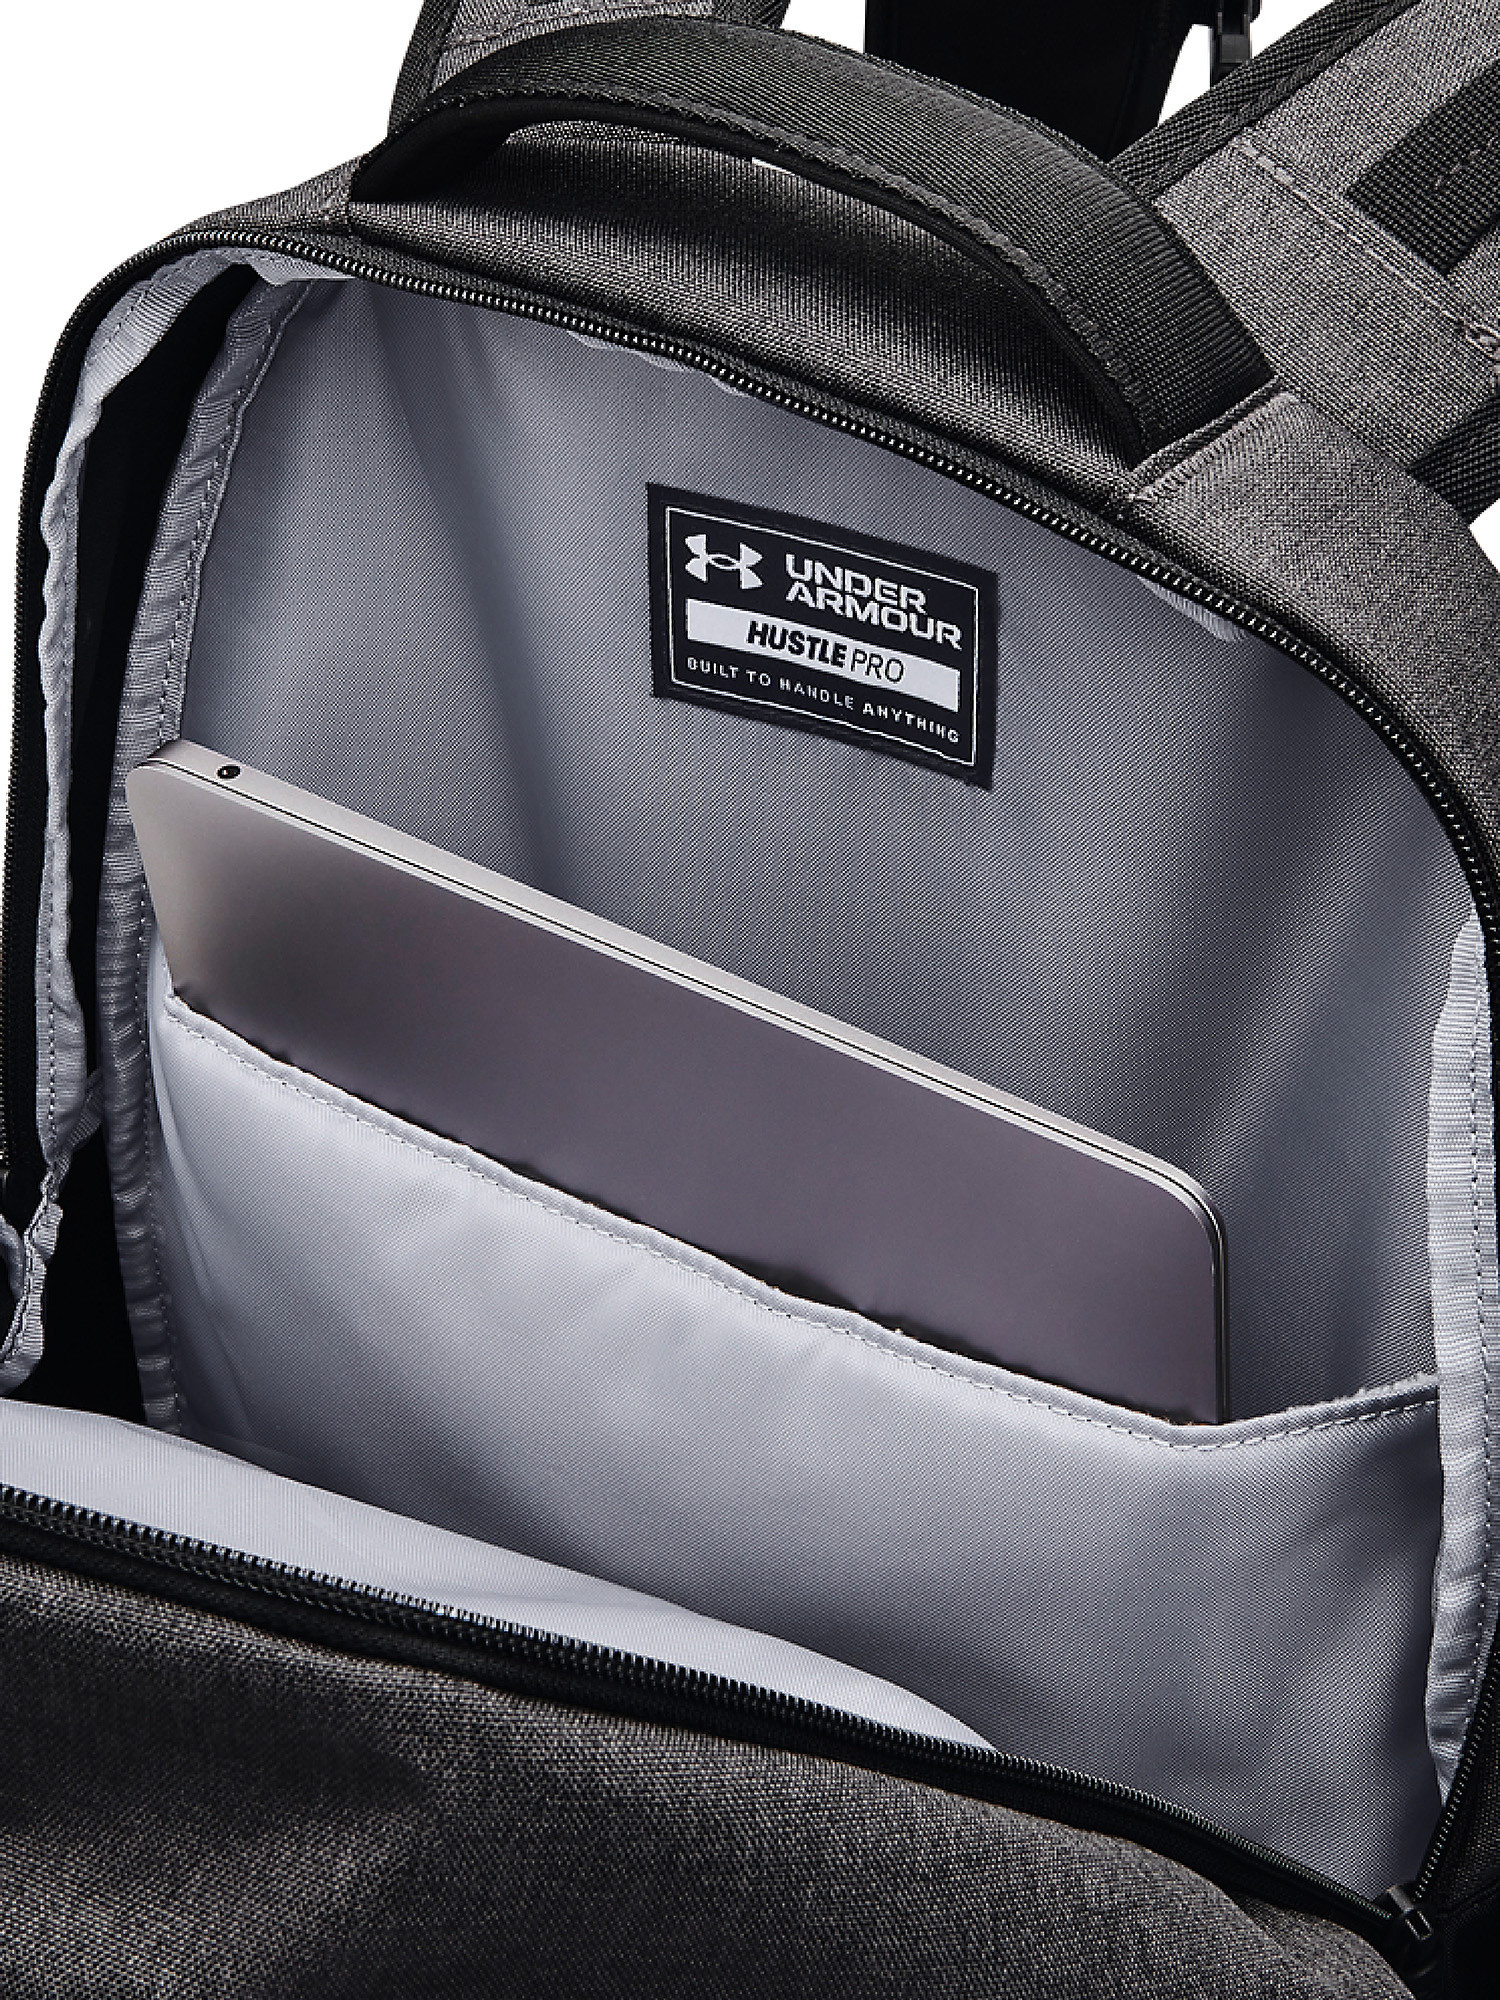 Under Armour - UA Hustle Pro Backpack, Black, large image number 3